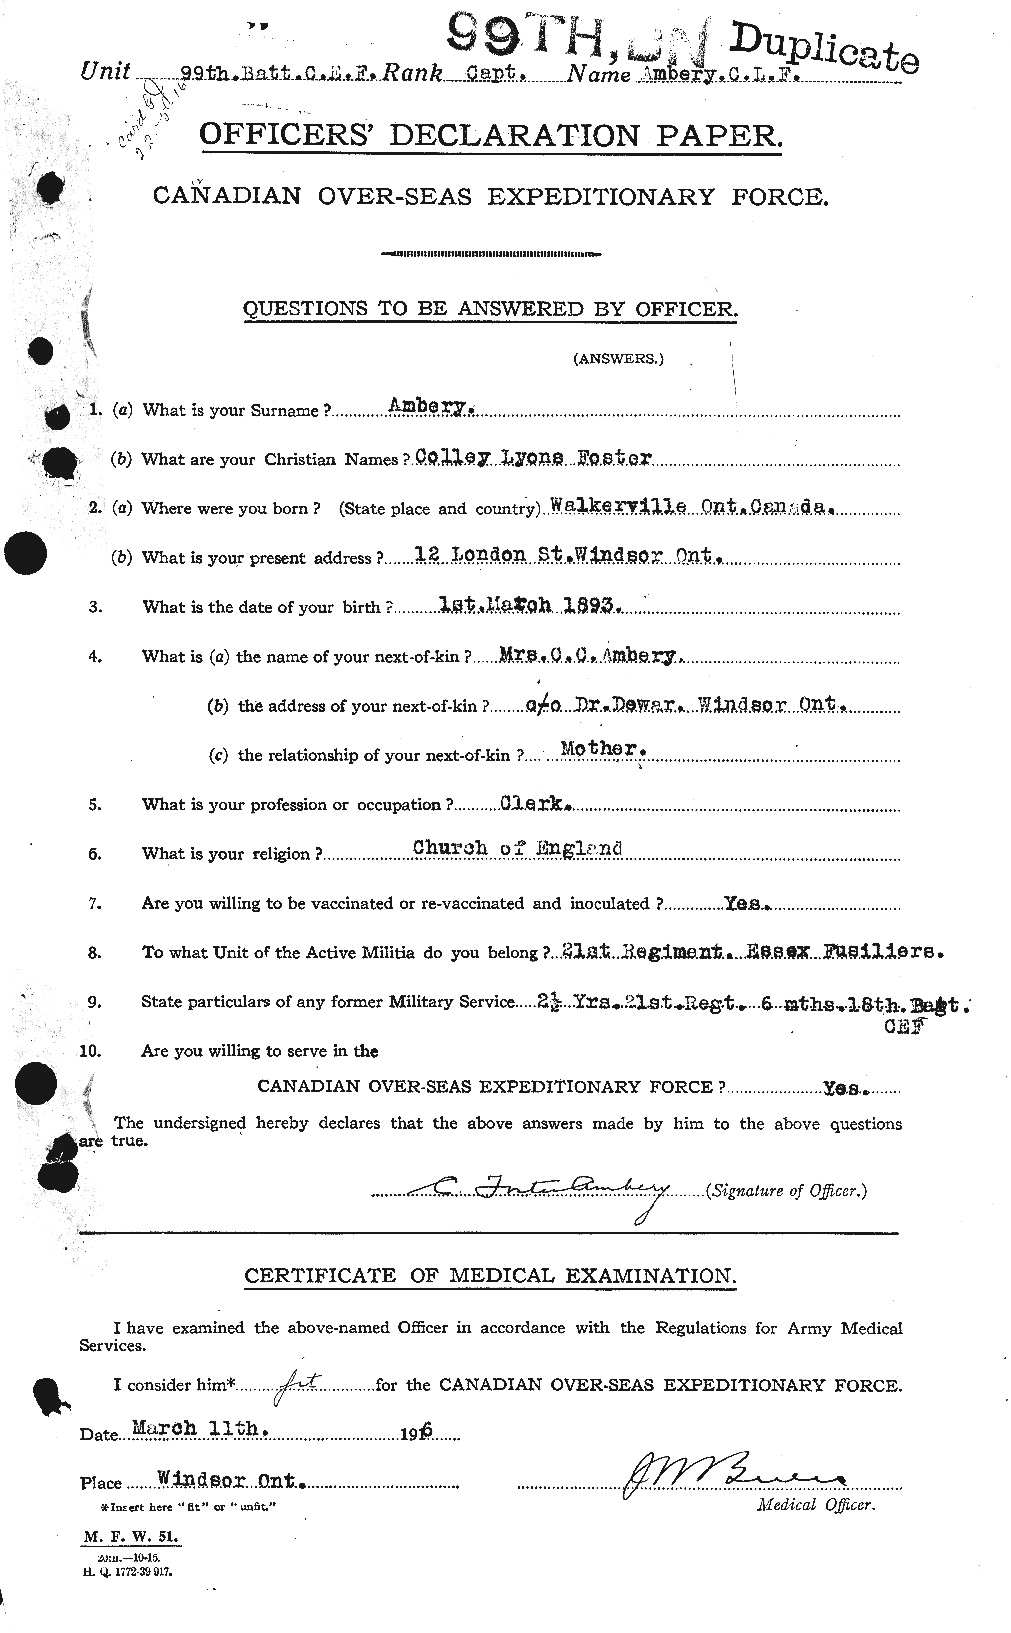 Dossiers du Personnel de la Première Guerre mondiale - CEC 208987a